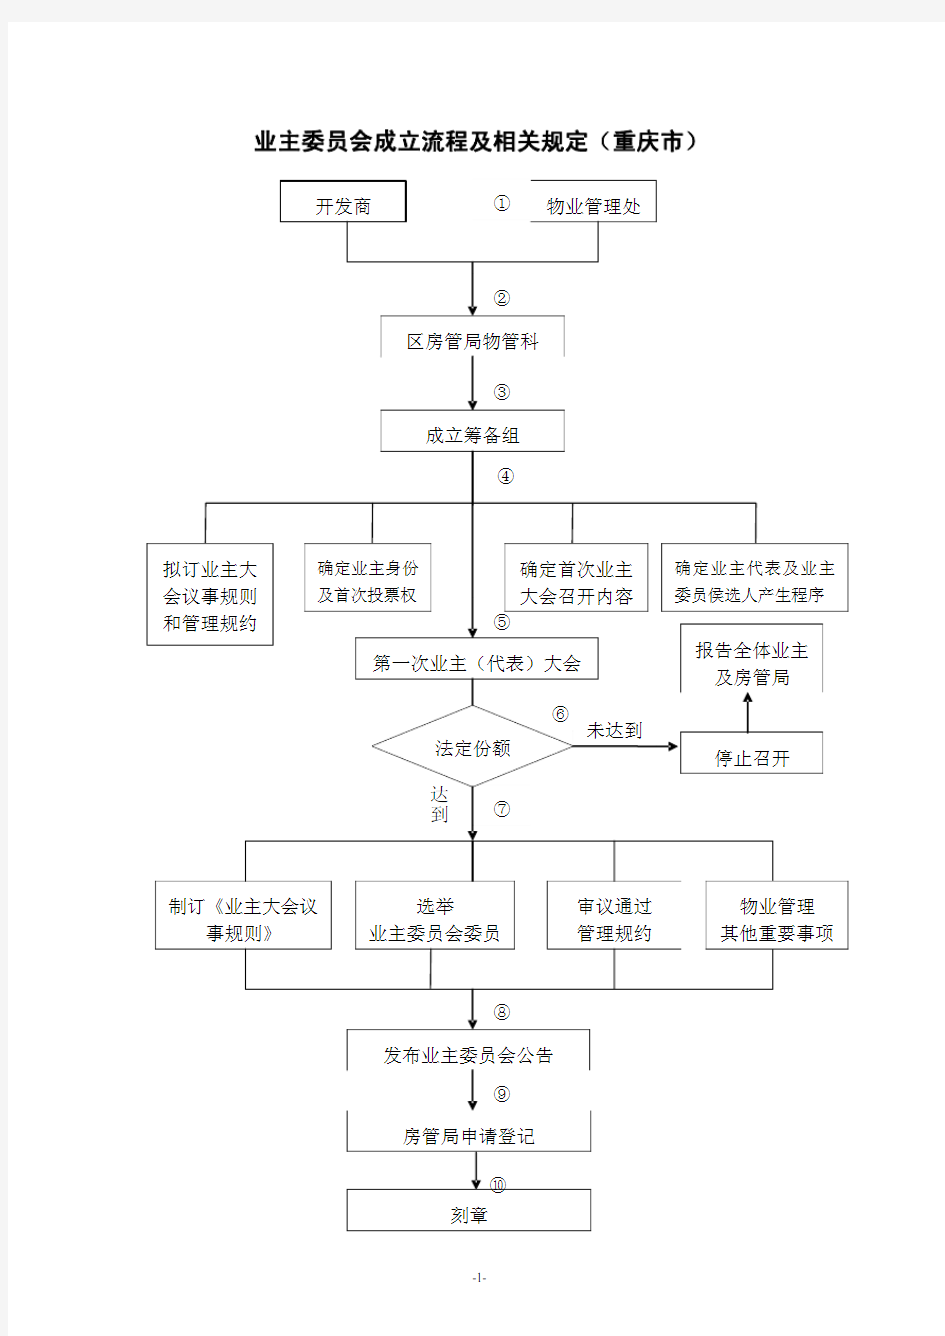 重庆市业主委员会成立最新流程(含流程说明文字)